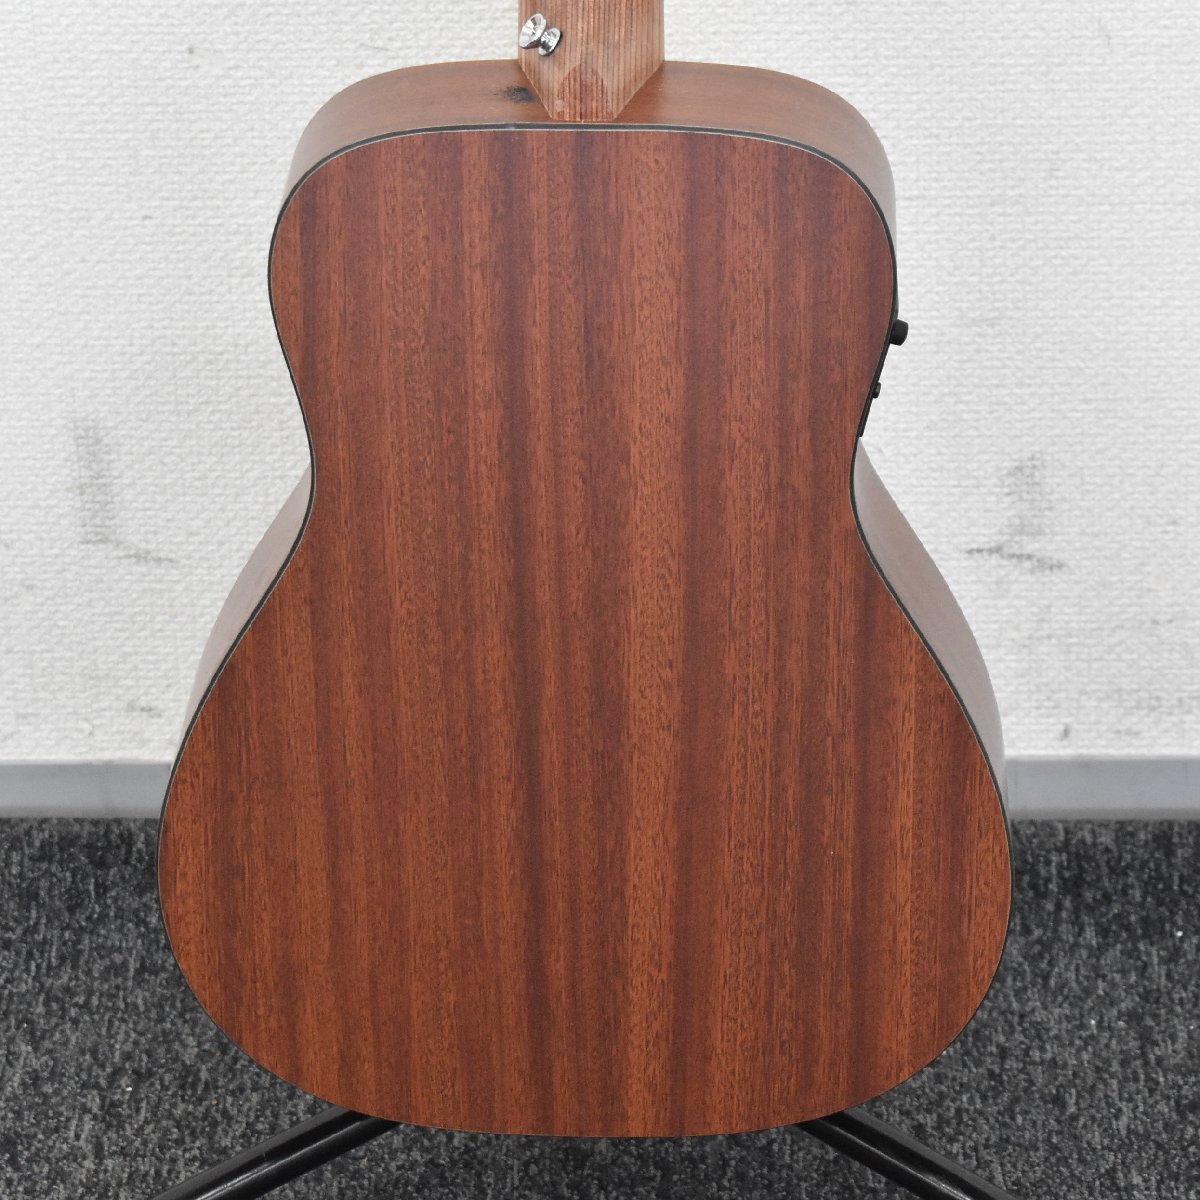 Σ2551 中古品 Martin&Co. LX1E #MG185489 マーティン エレアコギターの画像6